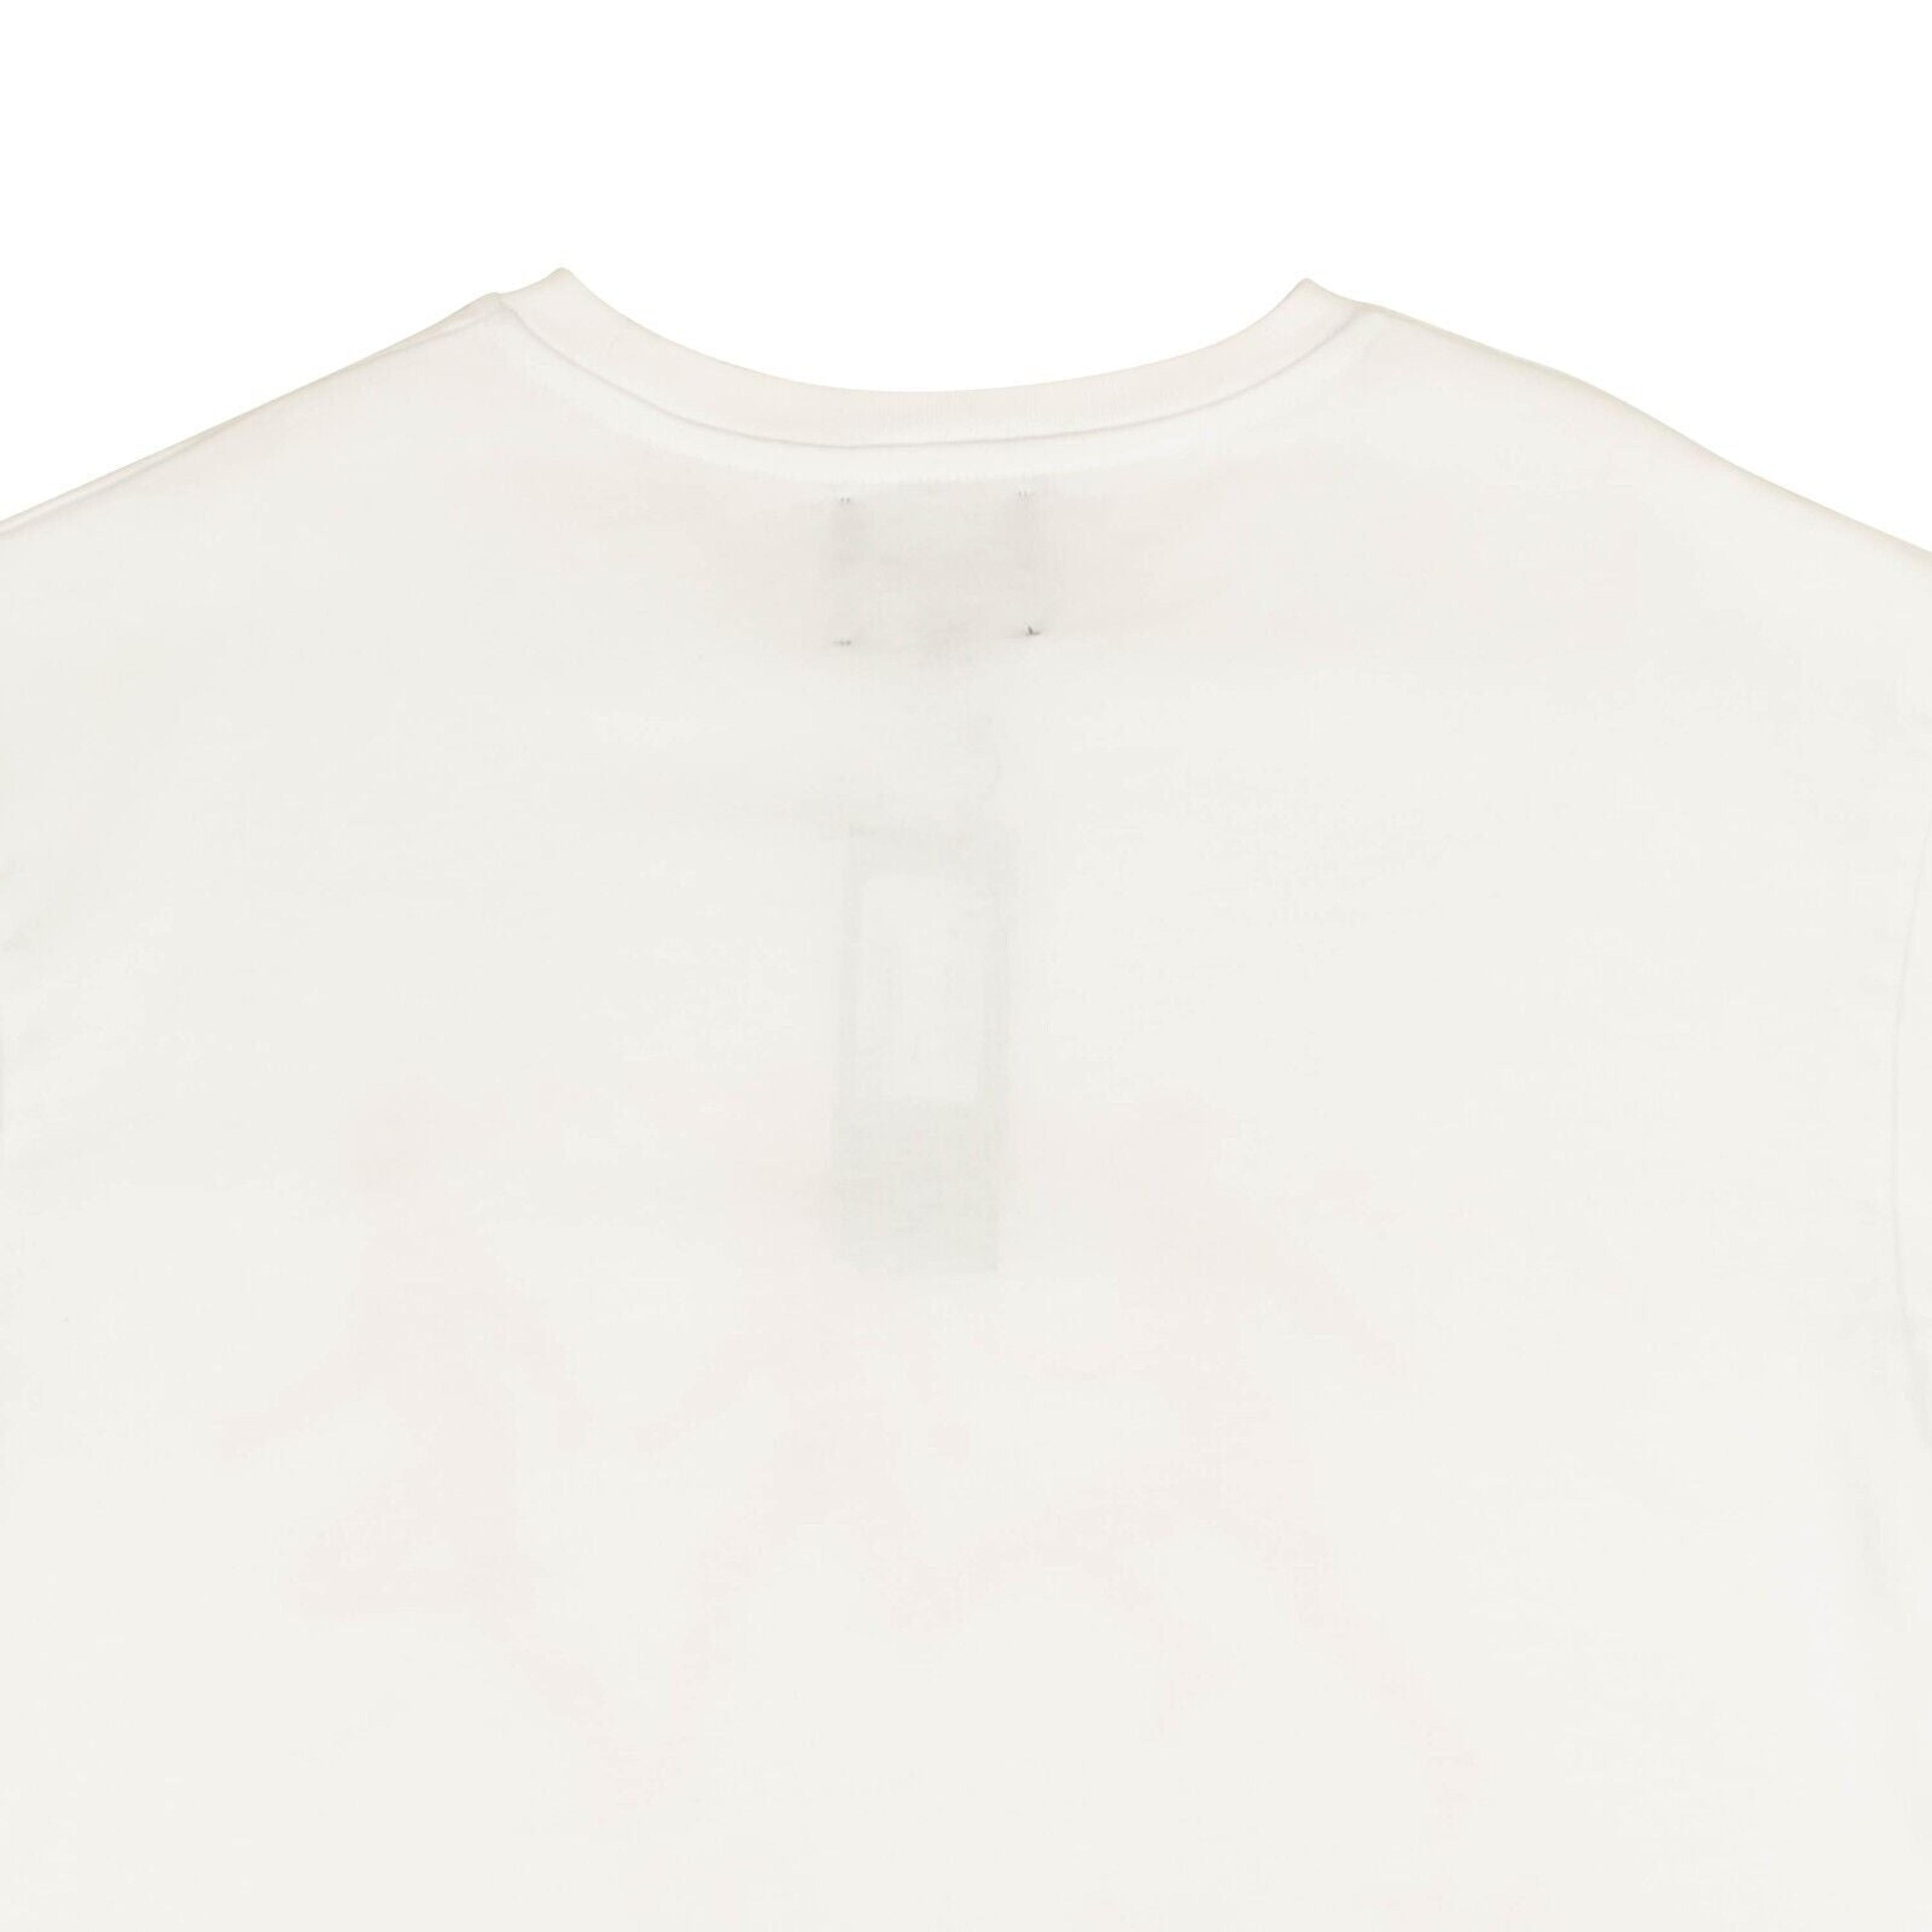 Alternate View 3 of White Rrunners Short Sleeve T-Shirt